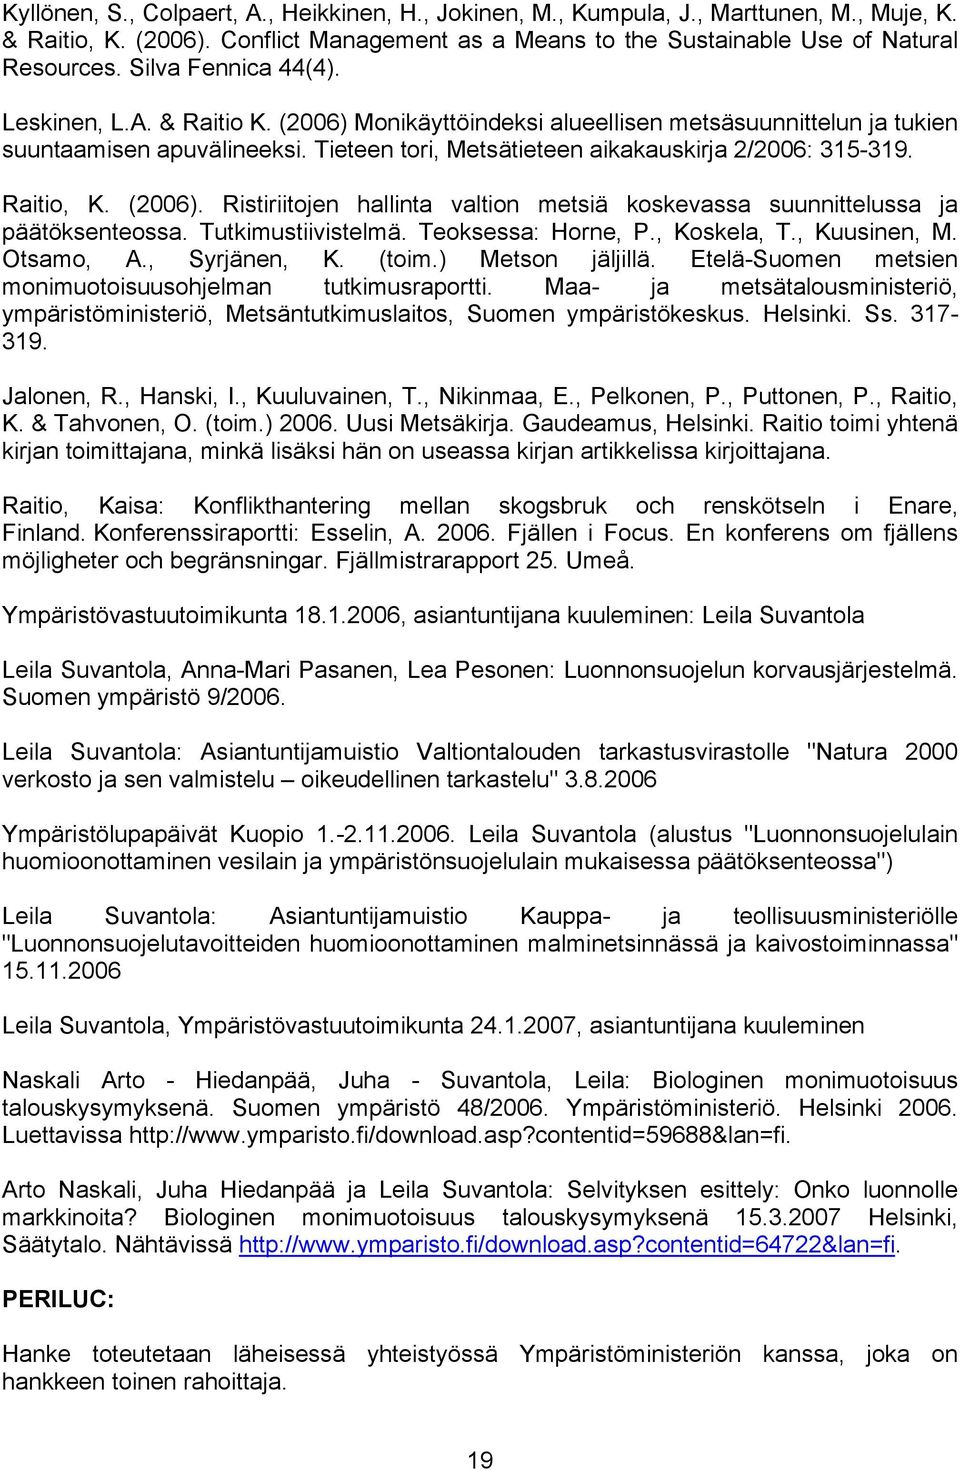 Raitio, K. (2006). Ristiriitojen hallinta valtion metsiä koskevassa suunnittelussa ja päätöksenteossa. Tutkimustiivistelmä. Teoksessa: Horne, P., Koskela, T., Kuusinen, M. Otsamo, A., Syrjänen, K.